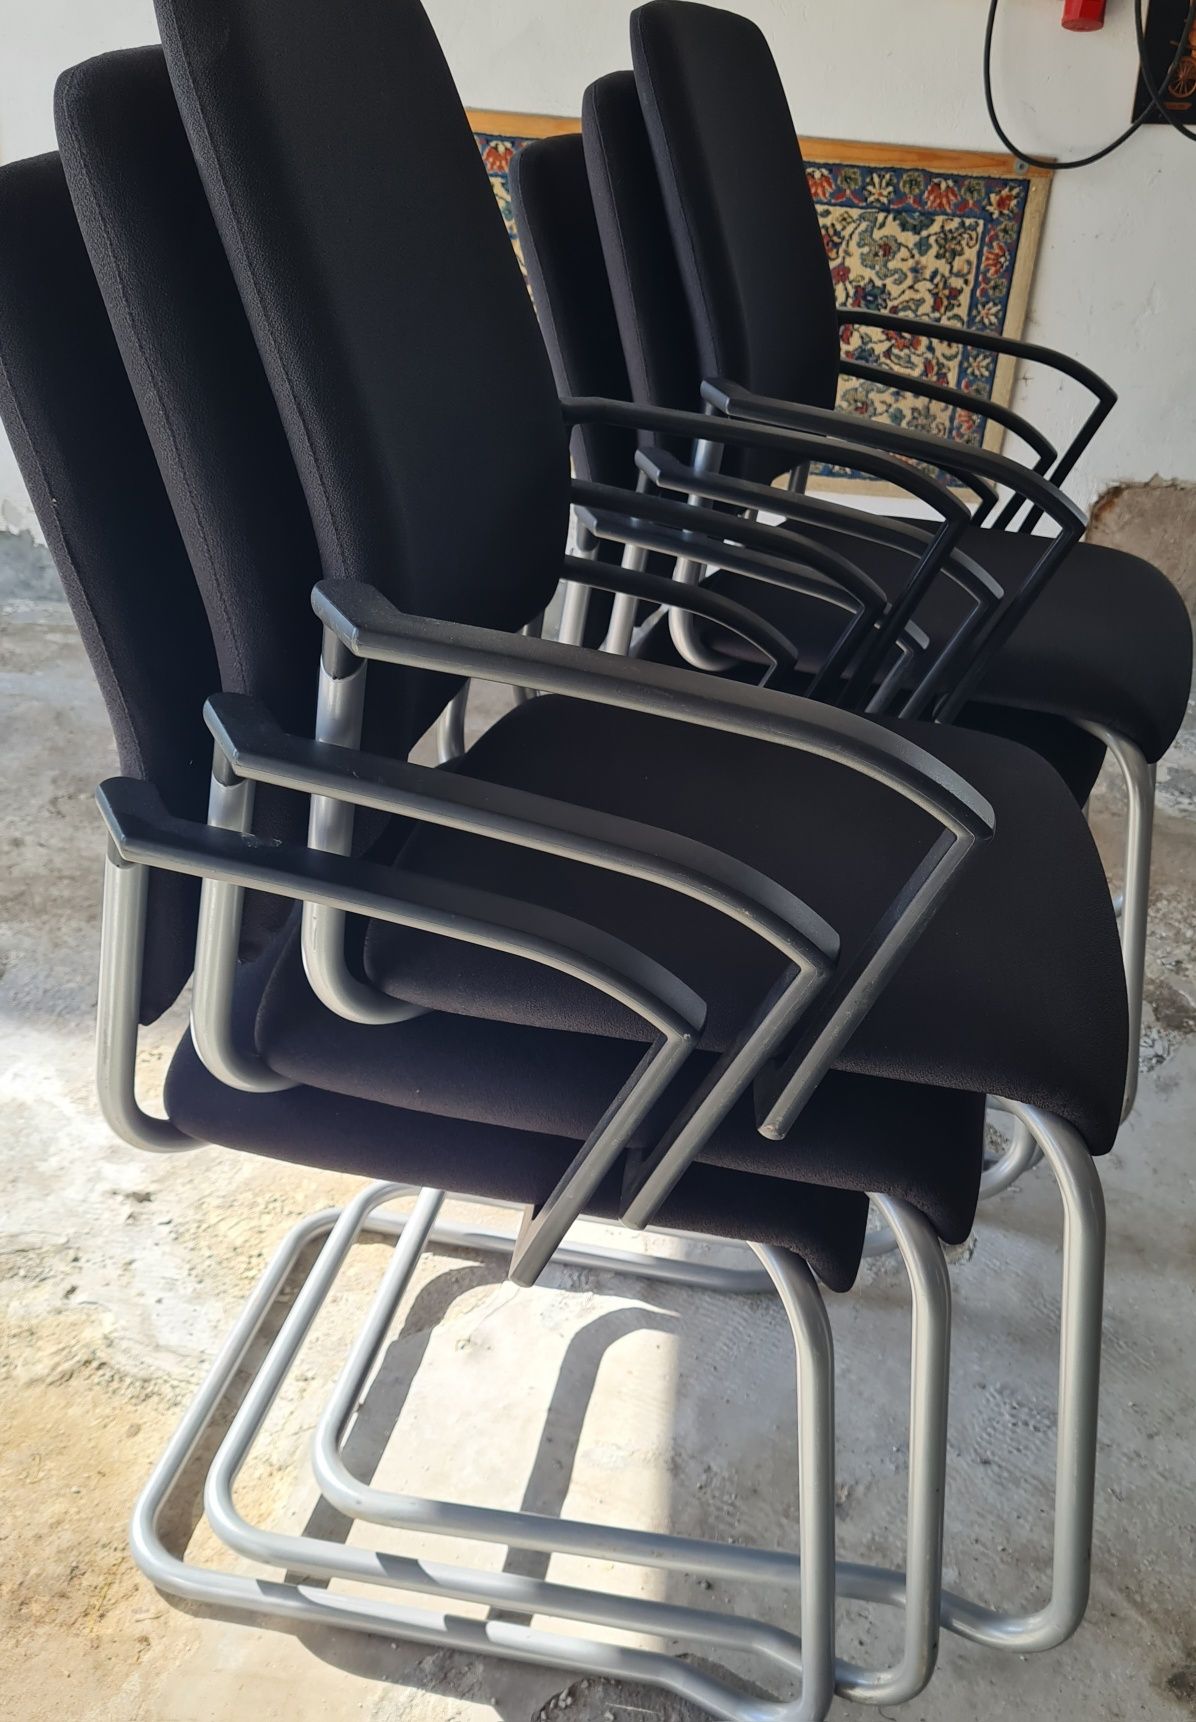 Krzesła biurowe metalowe. 6 sztuk.  CENA ZA KOMPLET